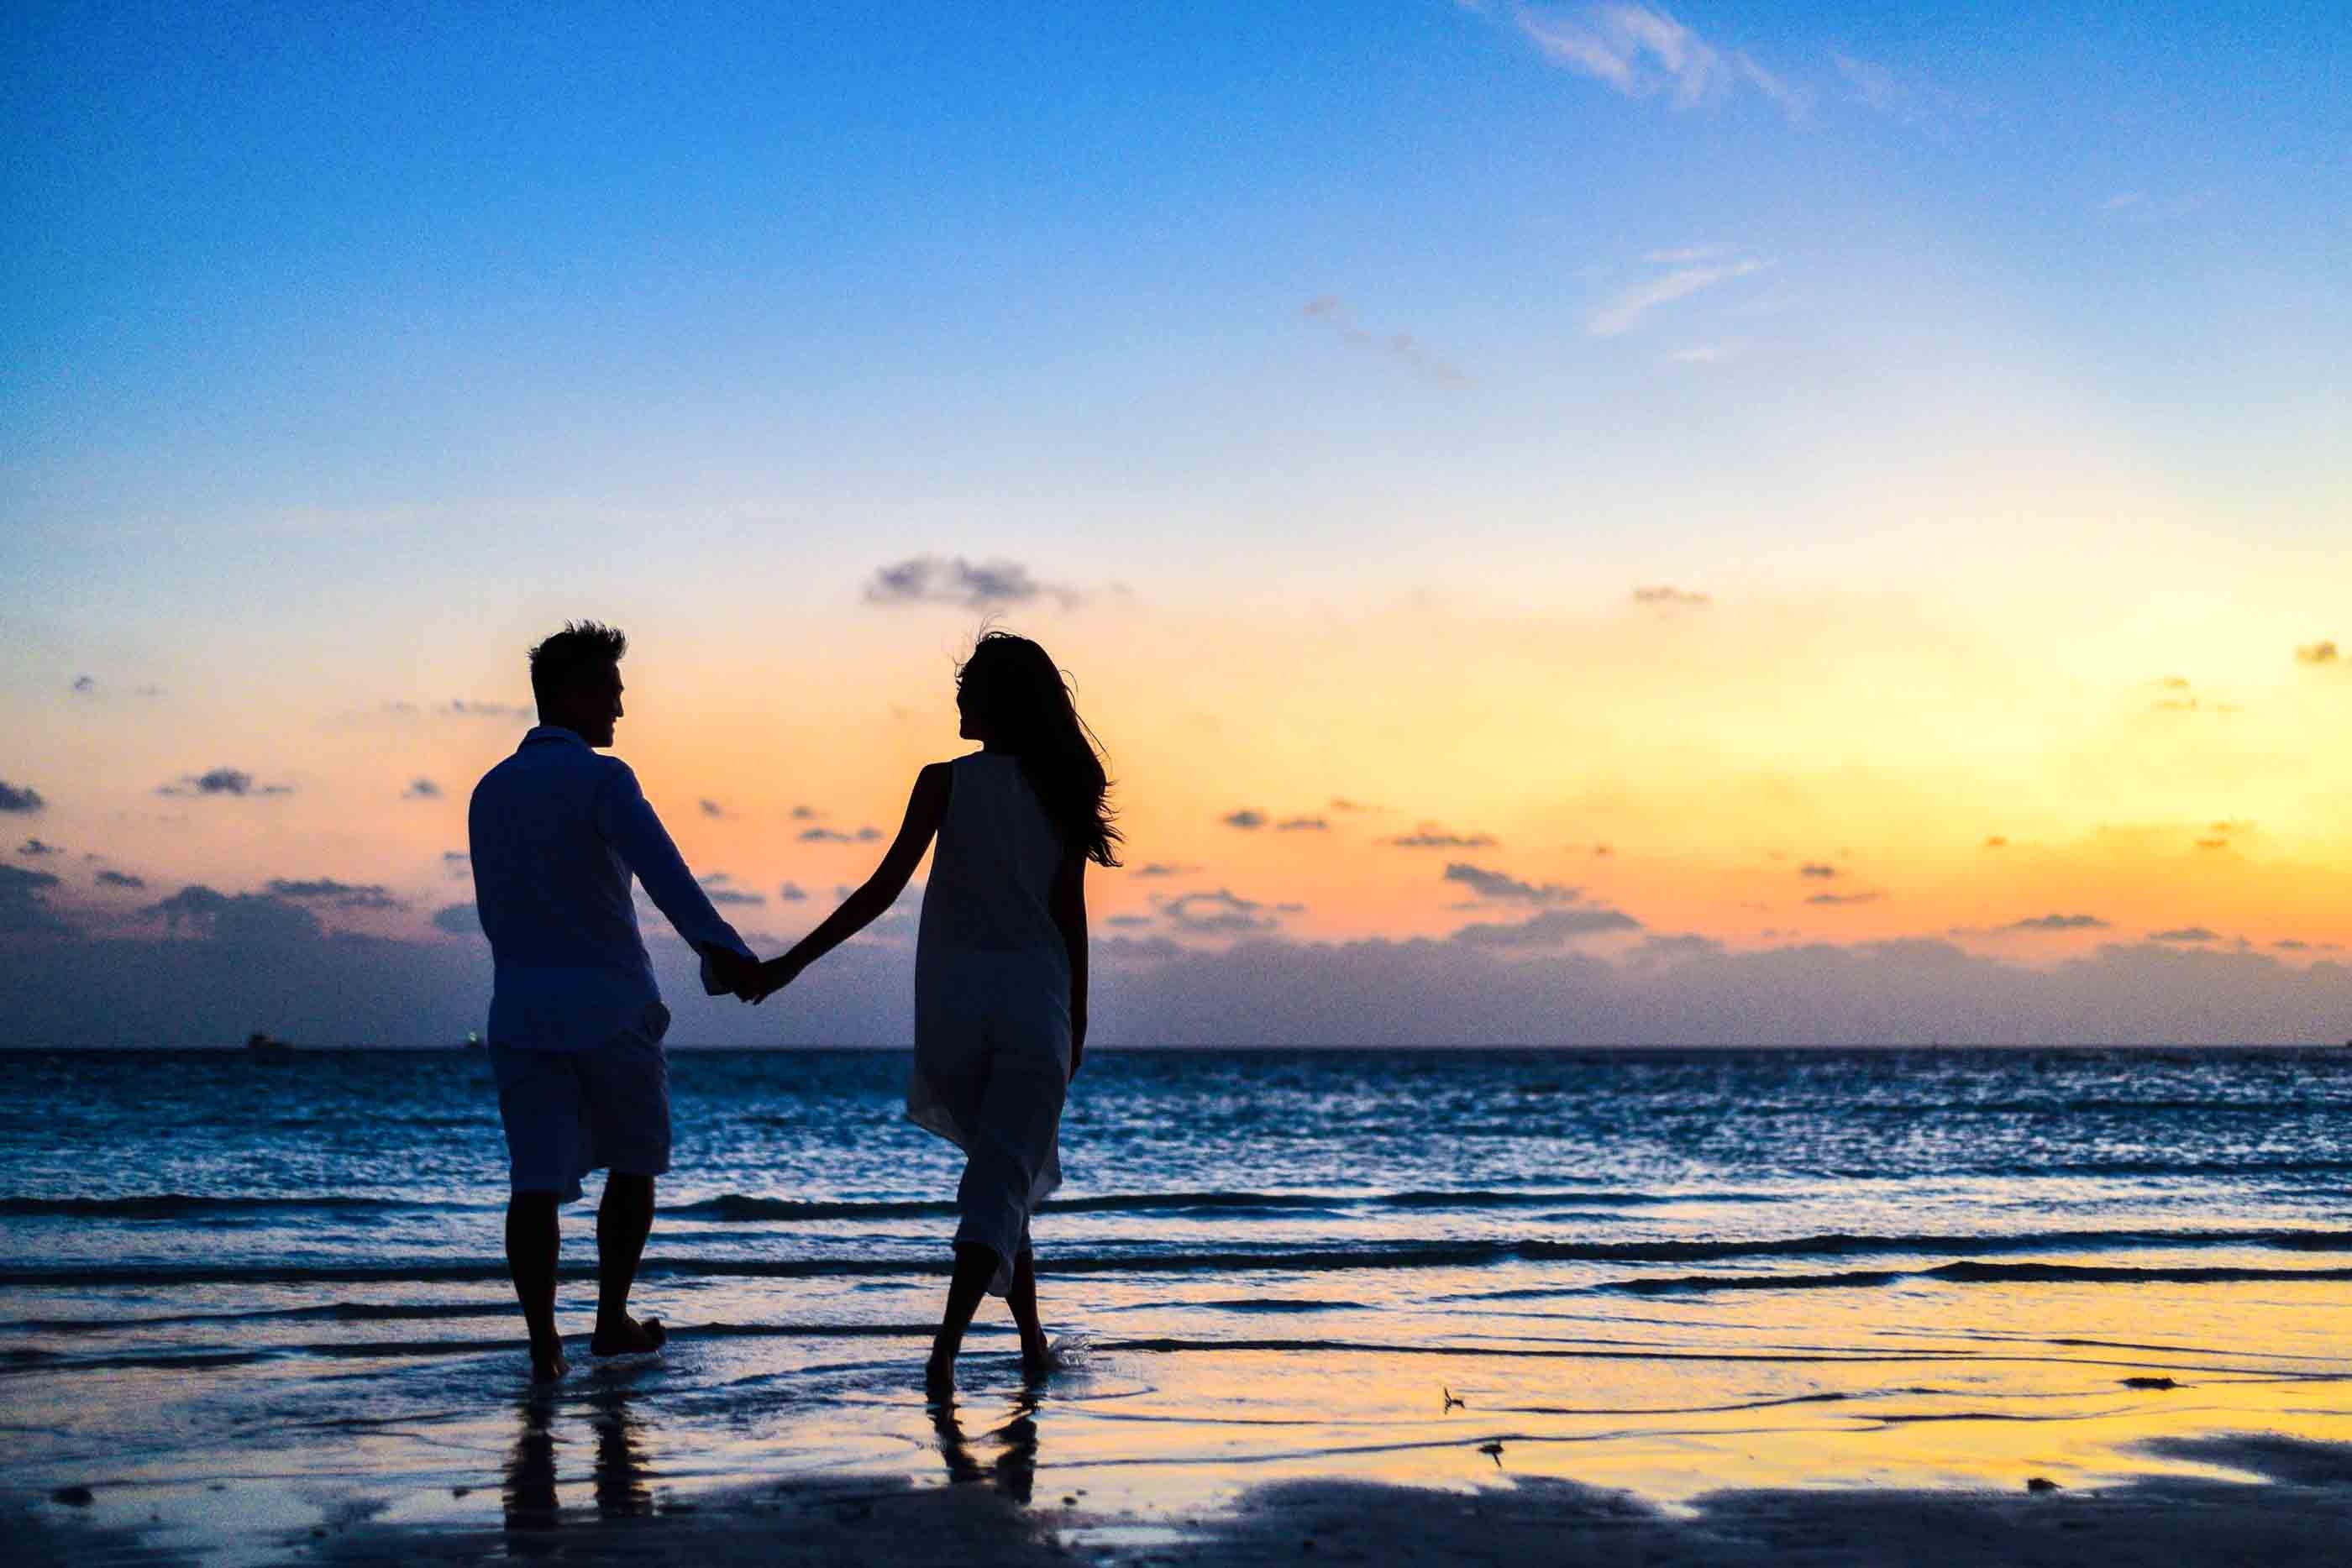 Rahasia Sukses dalam Membangun Hubungan Harmonis dan Bahagia, Tips Praktis untuk Menghindari Perselingkuhan